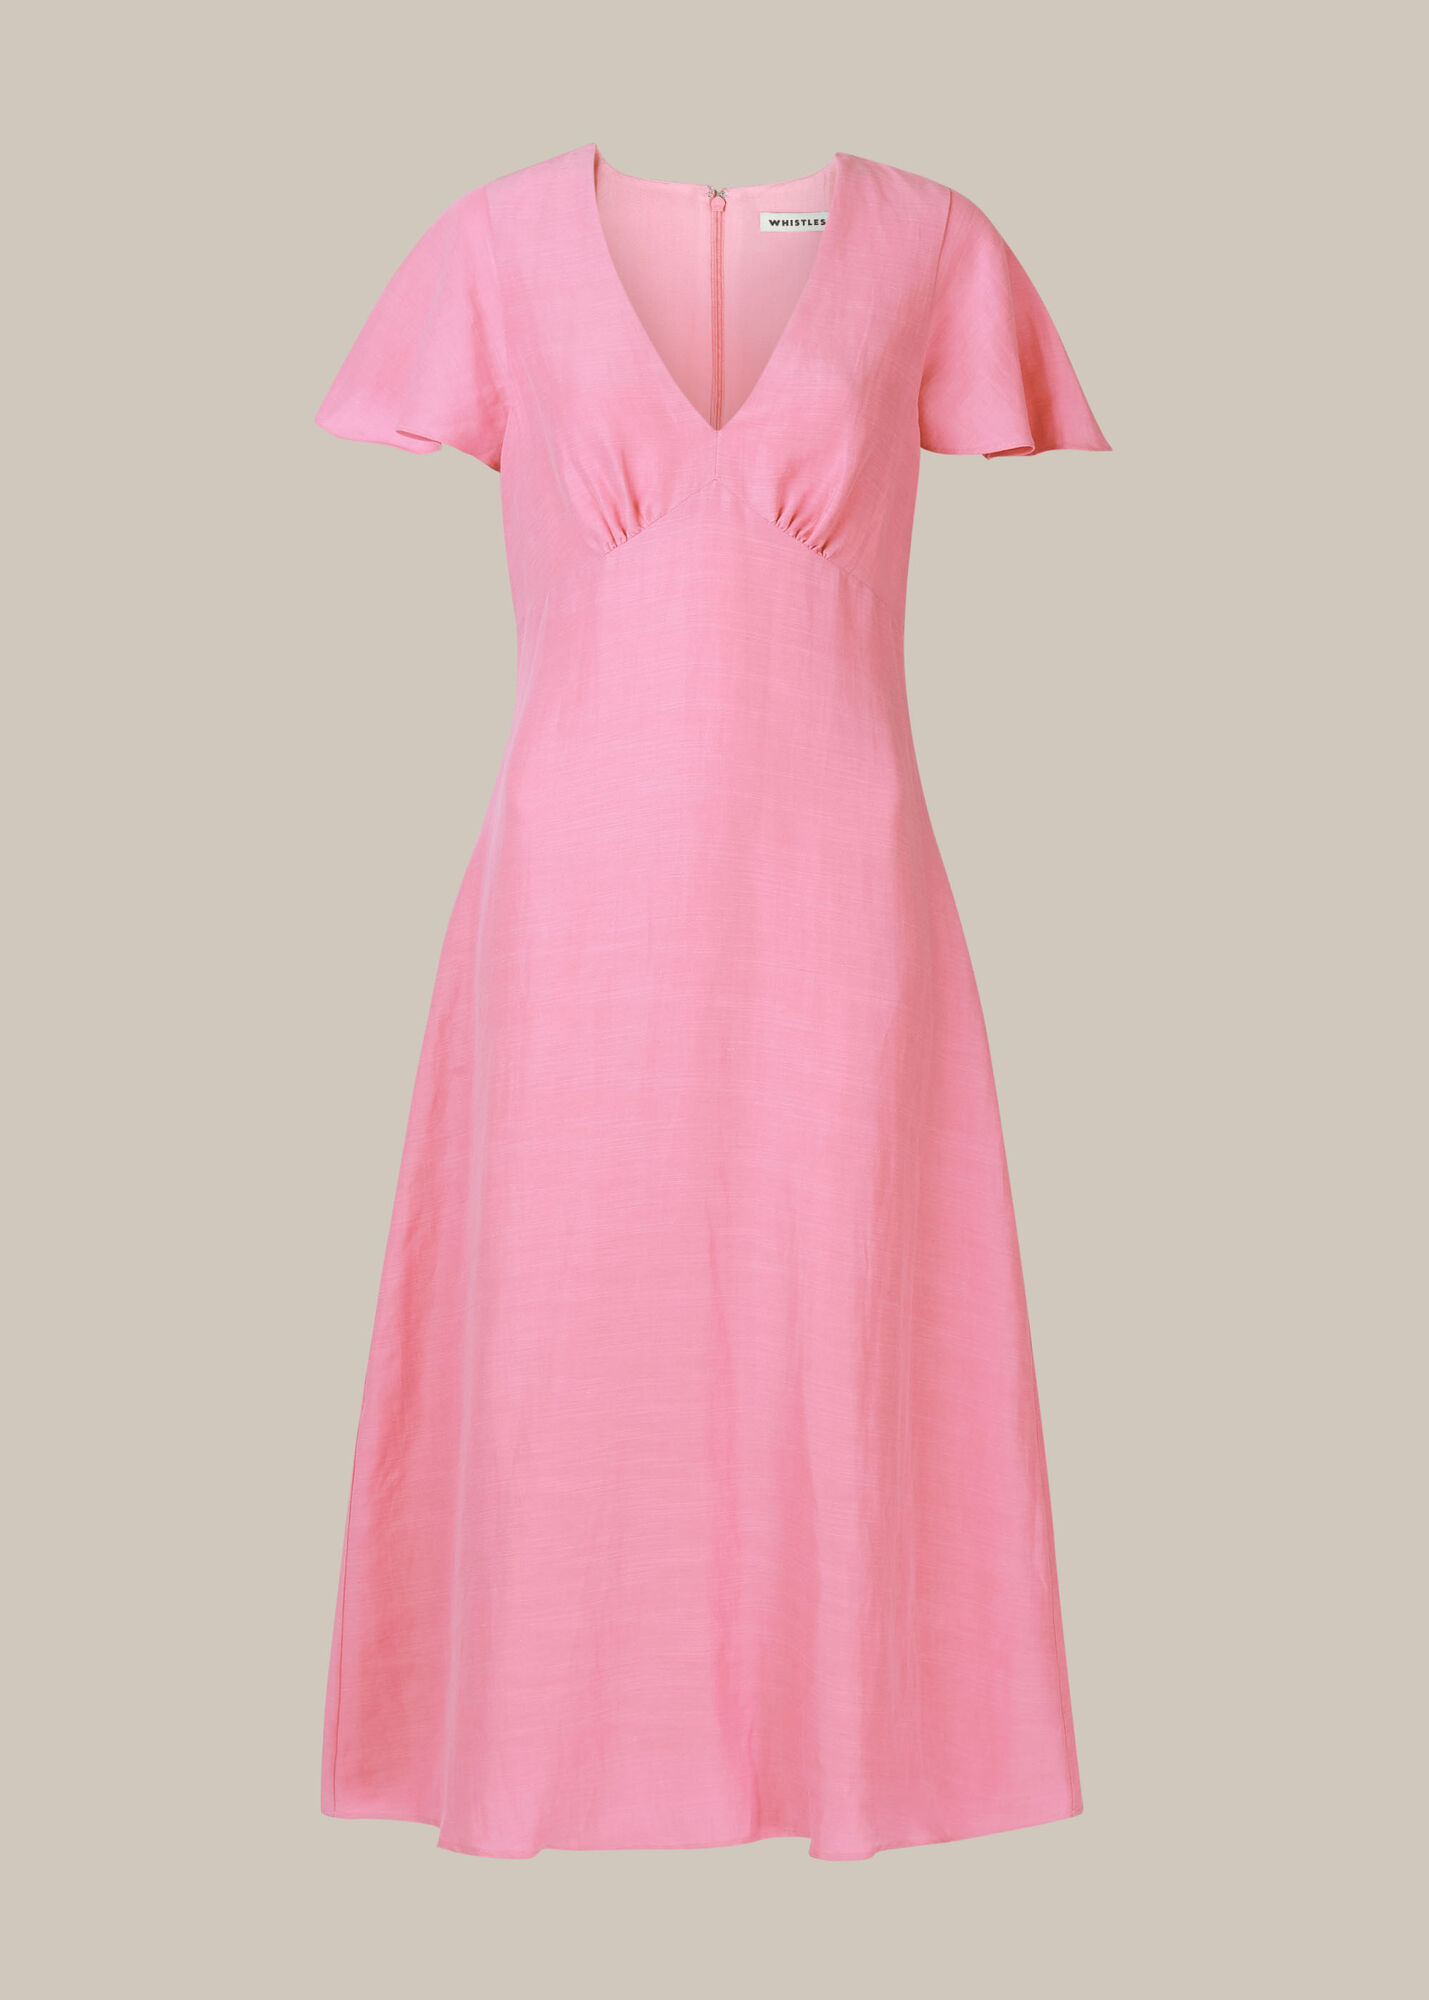 pink summer dresses uk